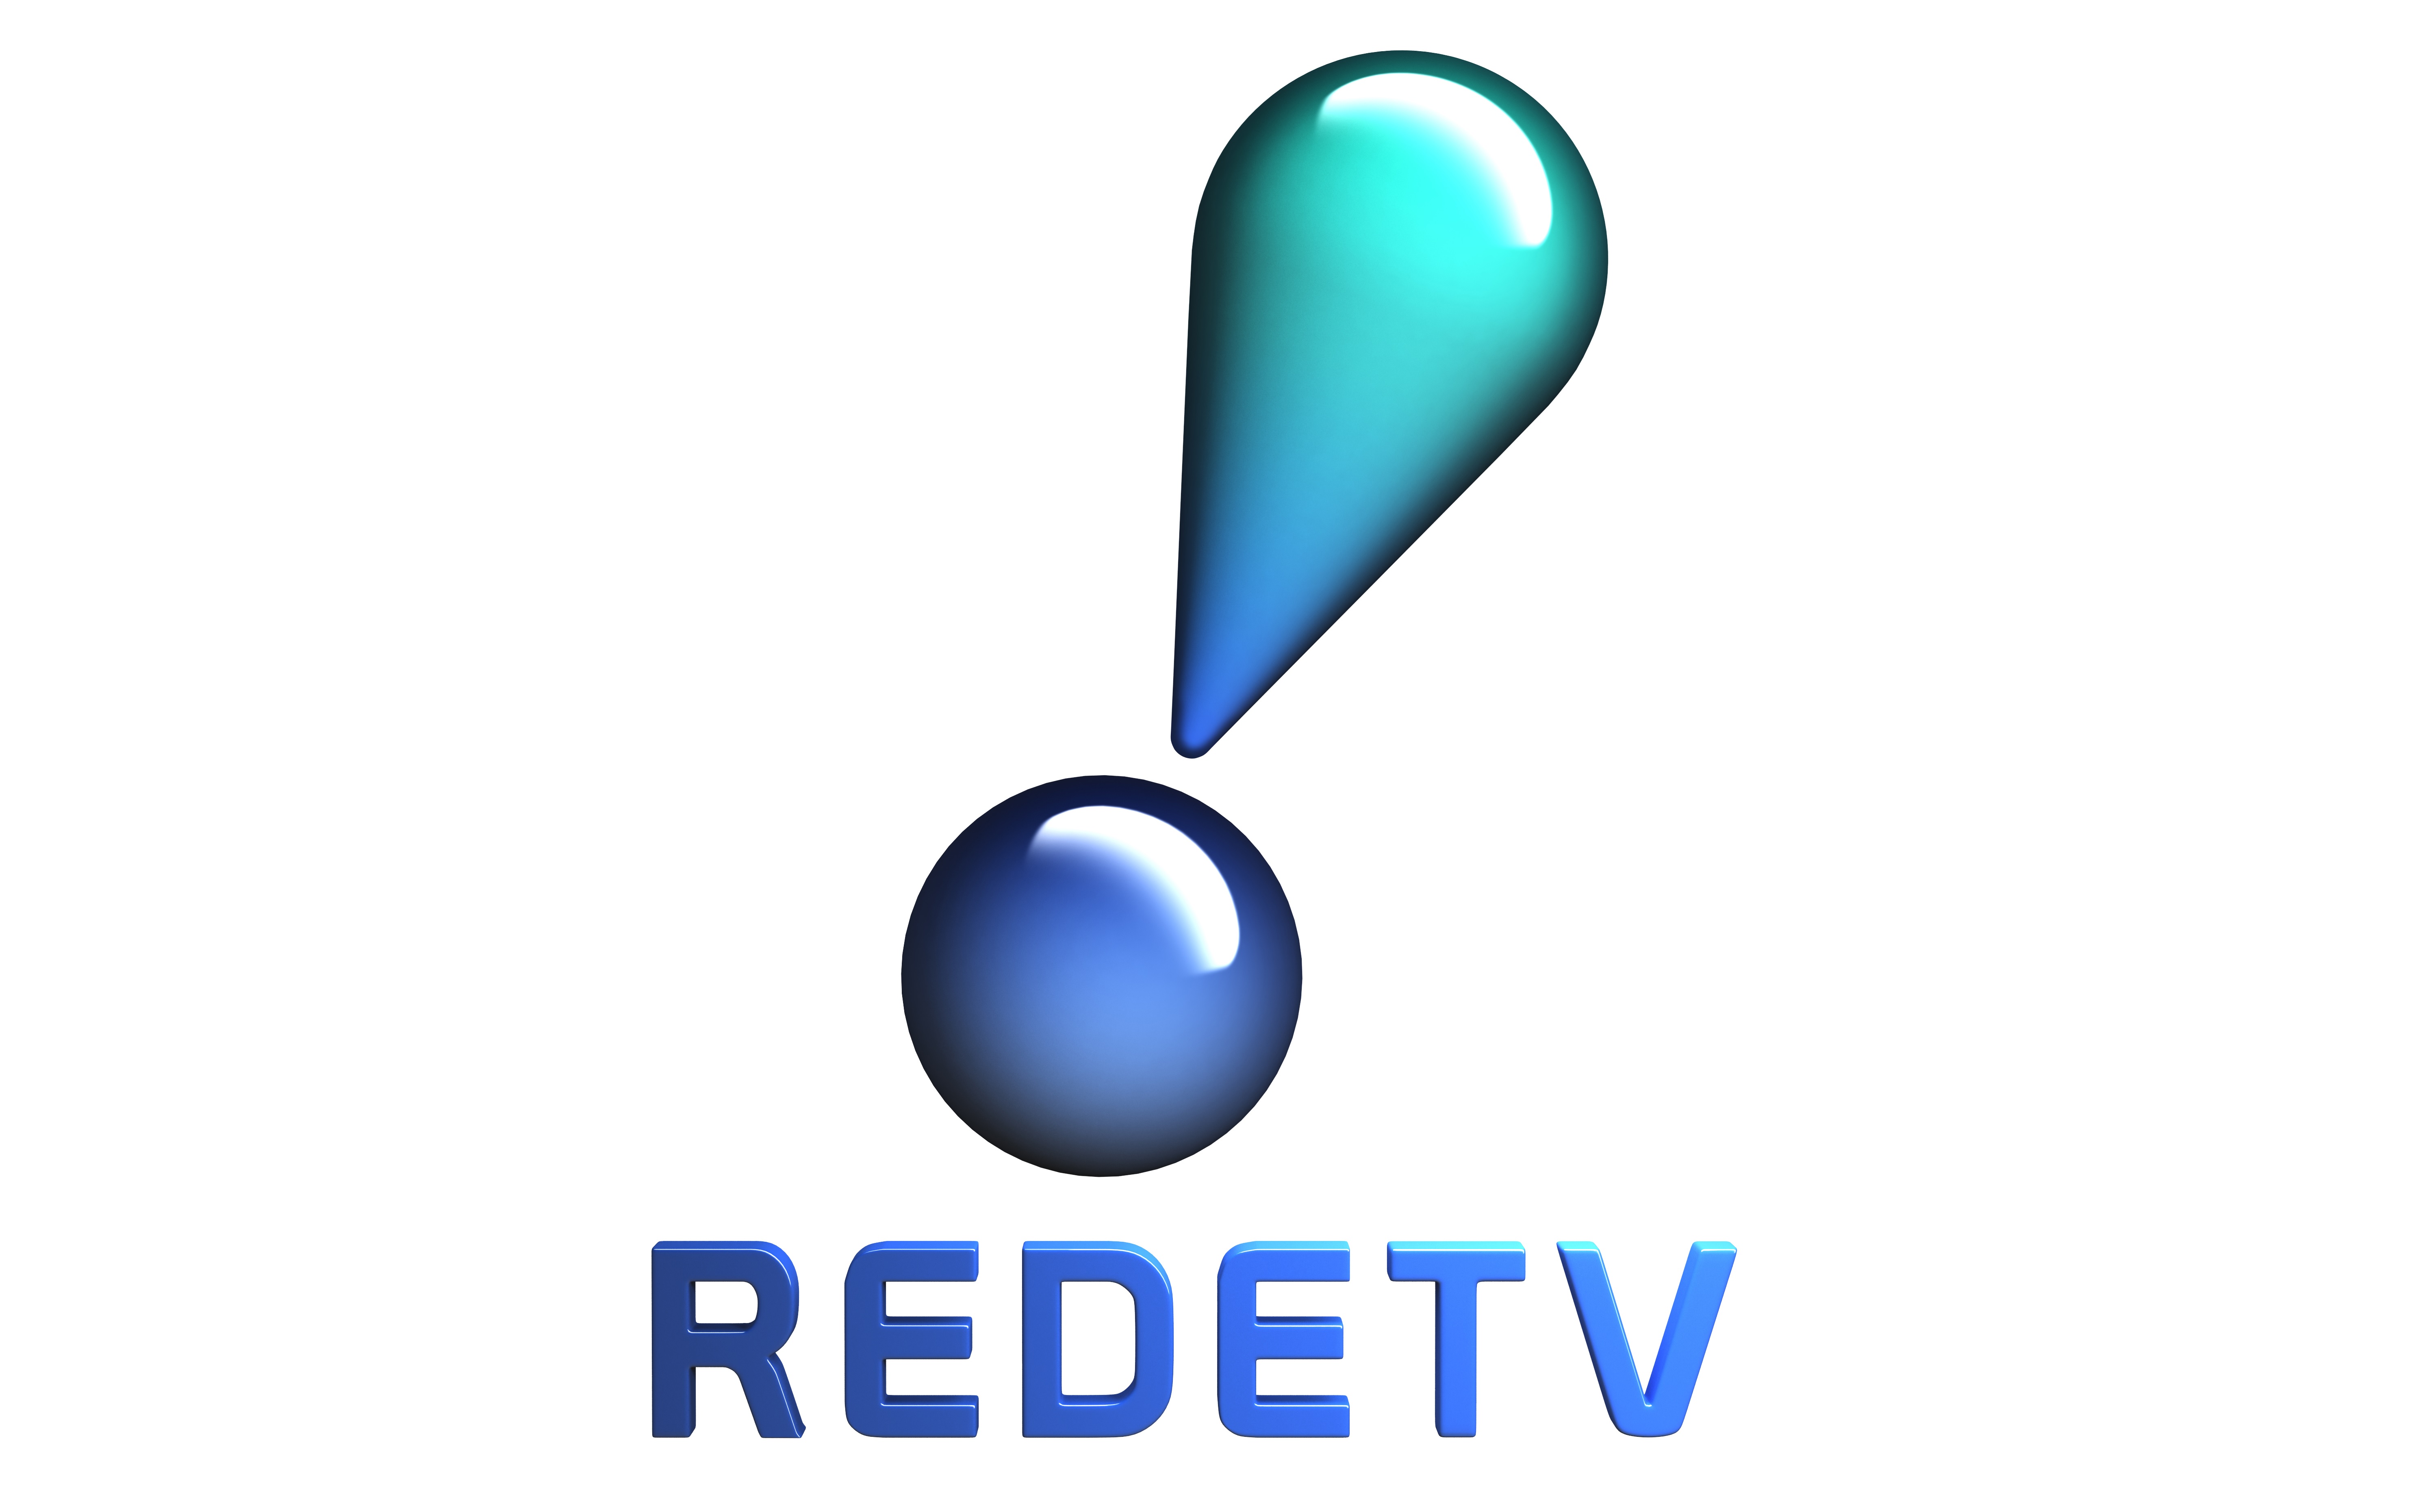 RedeTV! Em rede com você